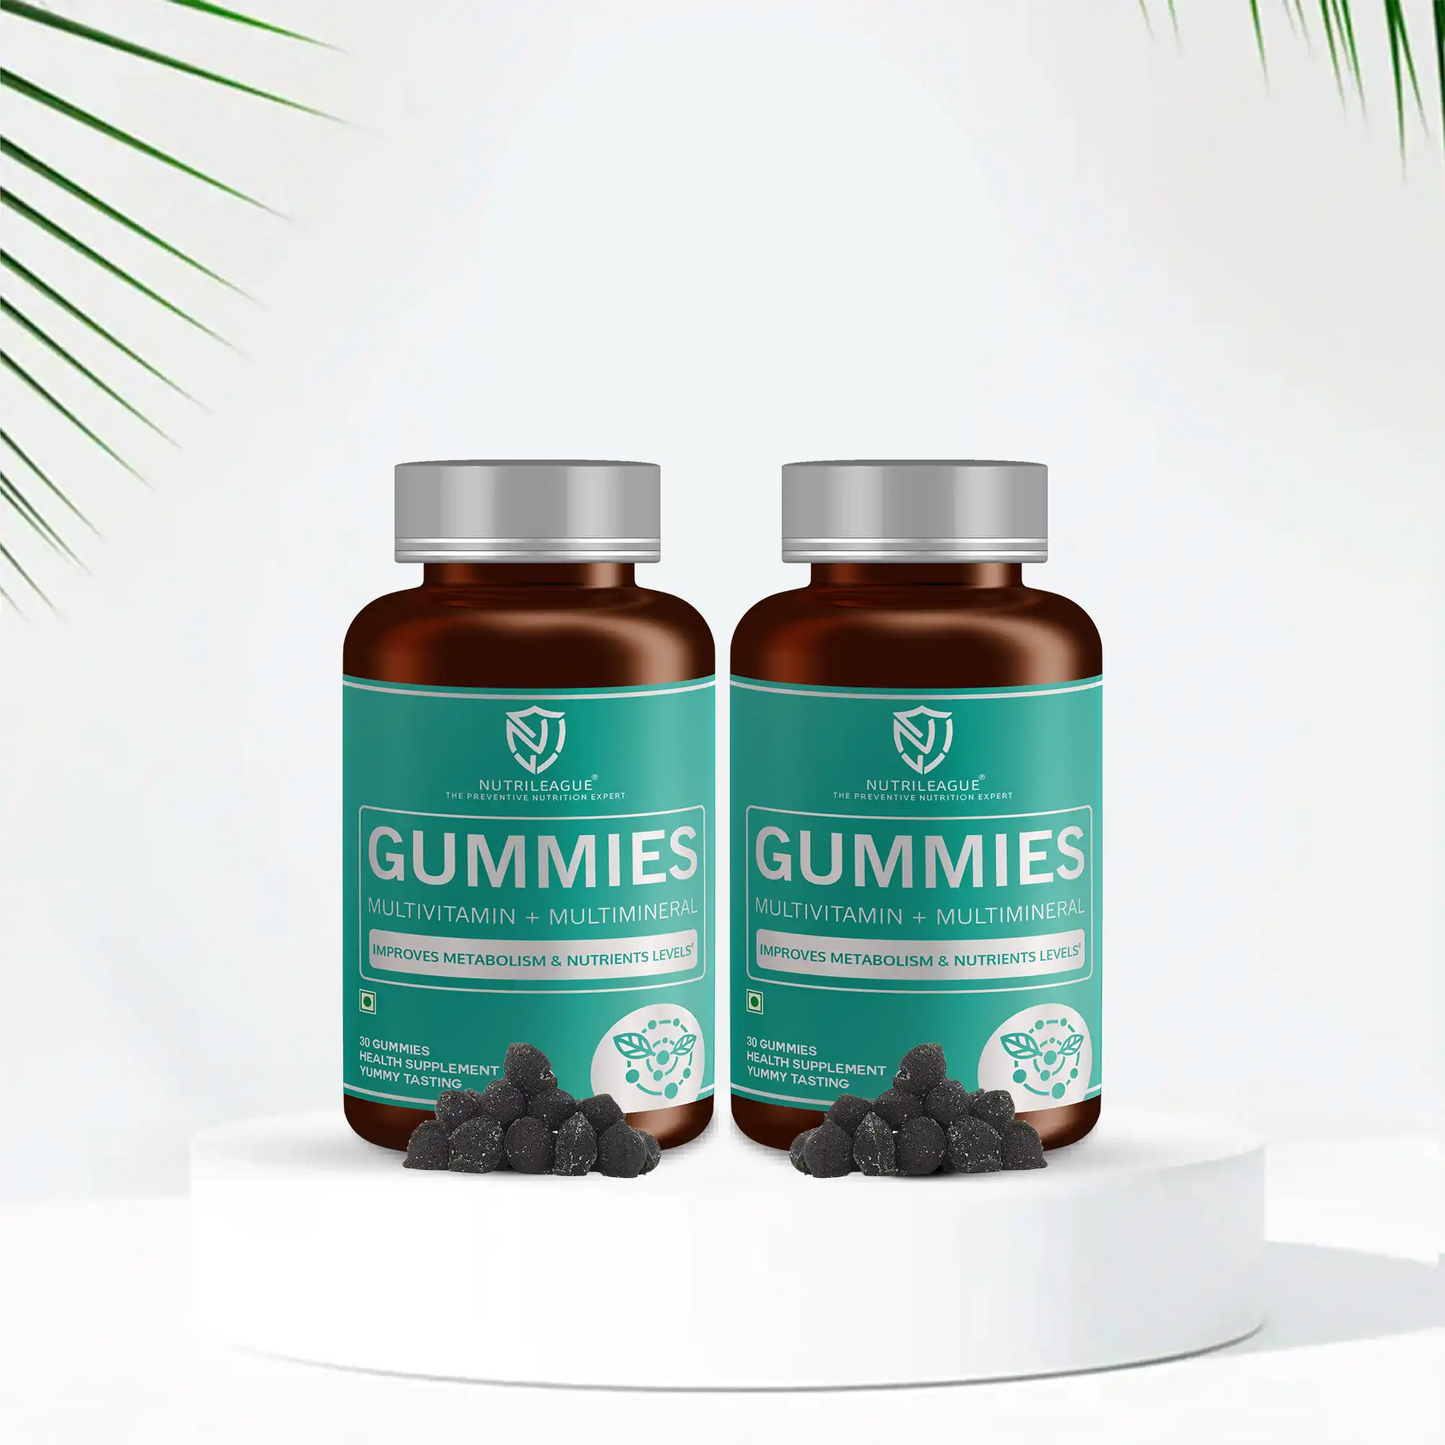 Multivitamin + Multimineral Gummies